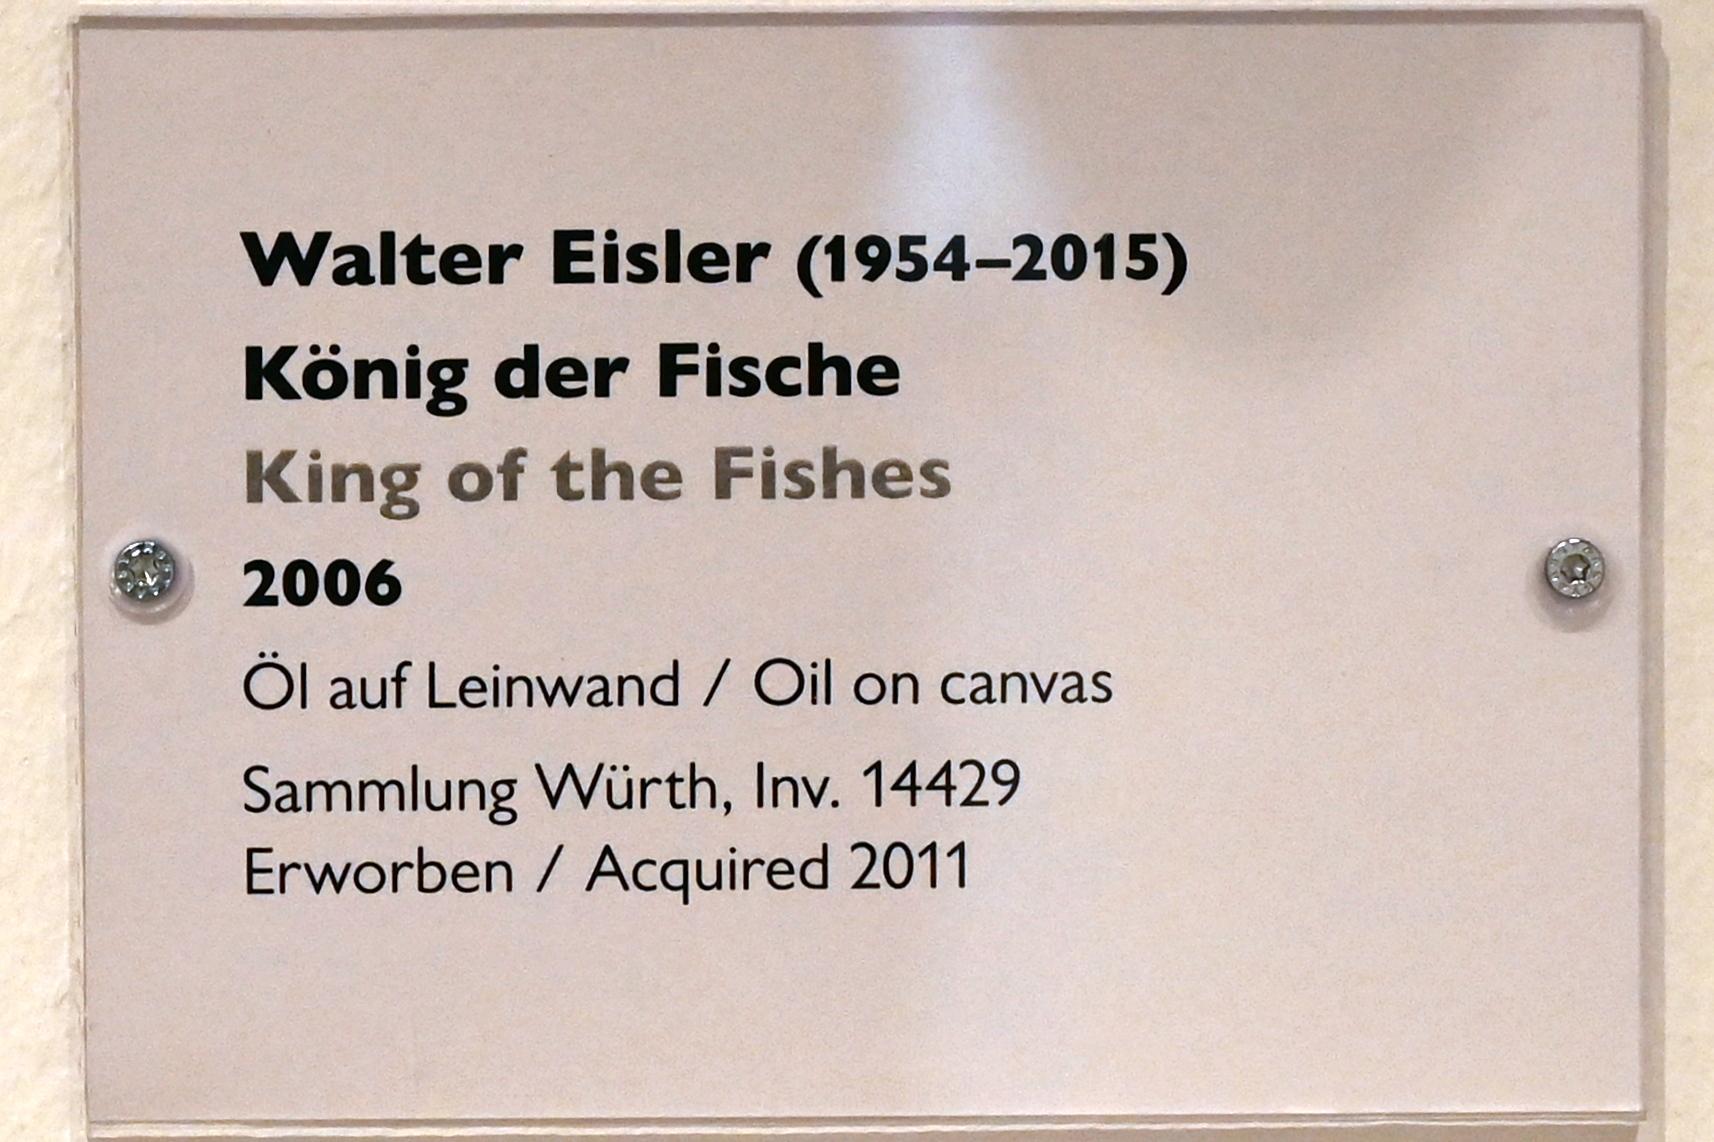 Walter Eisler (2005–2006), König der Fische, Schwäbisch Hall, Kunsthalle Würth, Ausstellung "Sport, Spaß und Spiel" vom 13.12.2021 - 26.02.2023, Untergeschoß, 2006, Bild 2/2